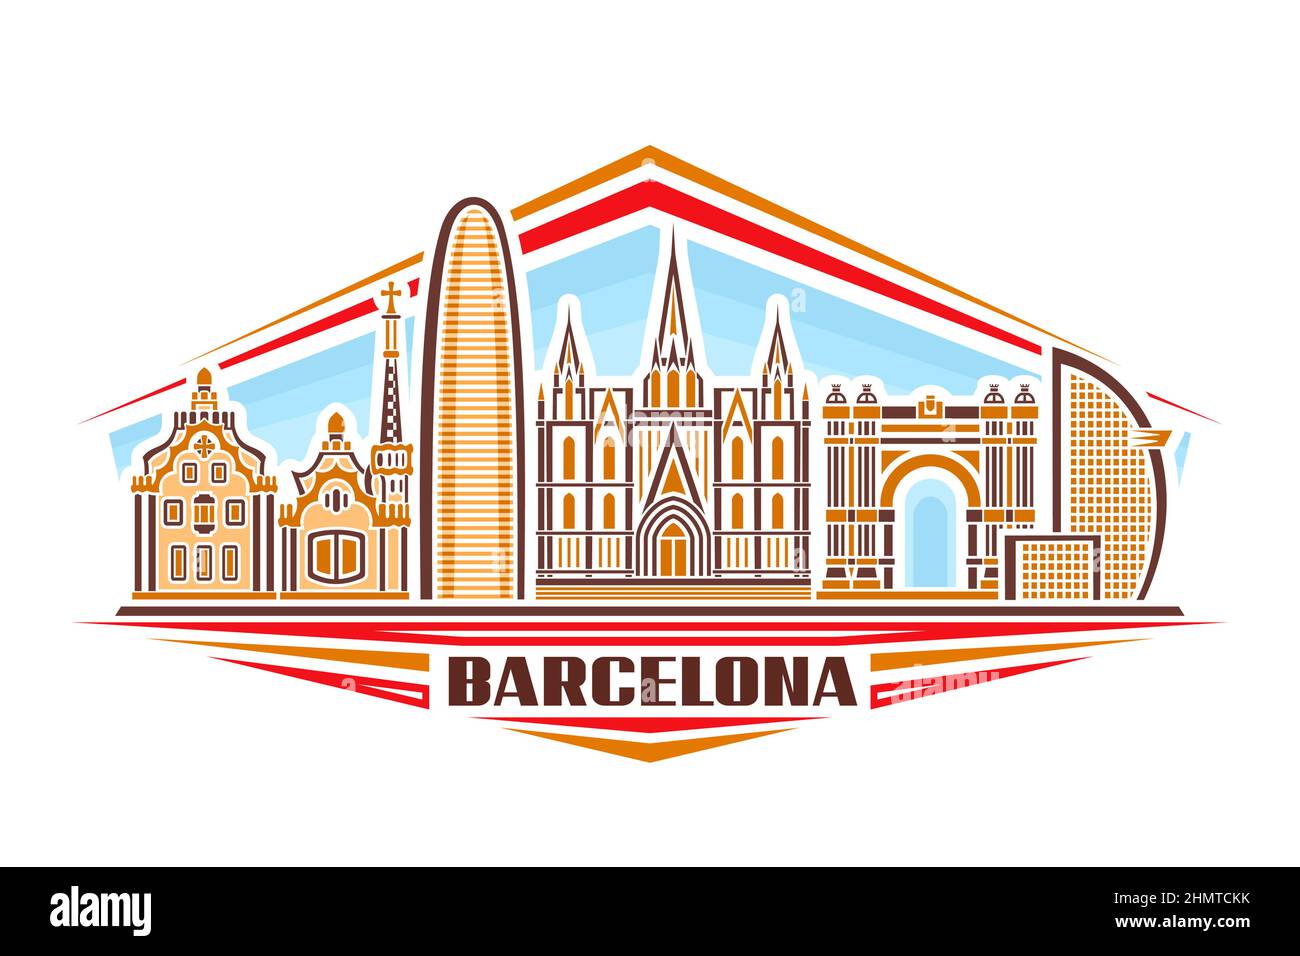 Vektor-Illustration von Barcelona, horizontales Schild mit linearem Design berühmte barcelona Stadtlandschaft am Tag Himmel Hintergrund, europäische Stadtlinie Kunst concep Stock Vektor